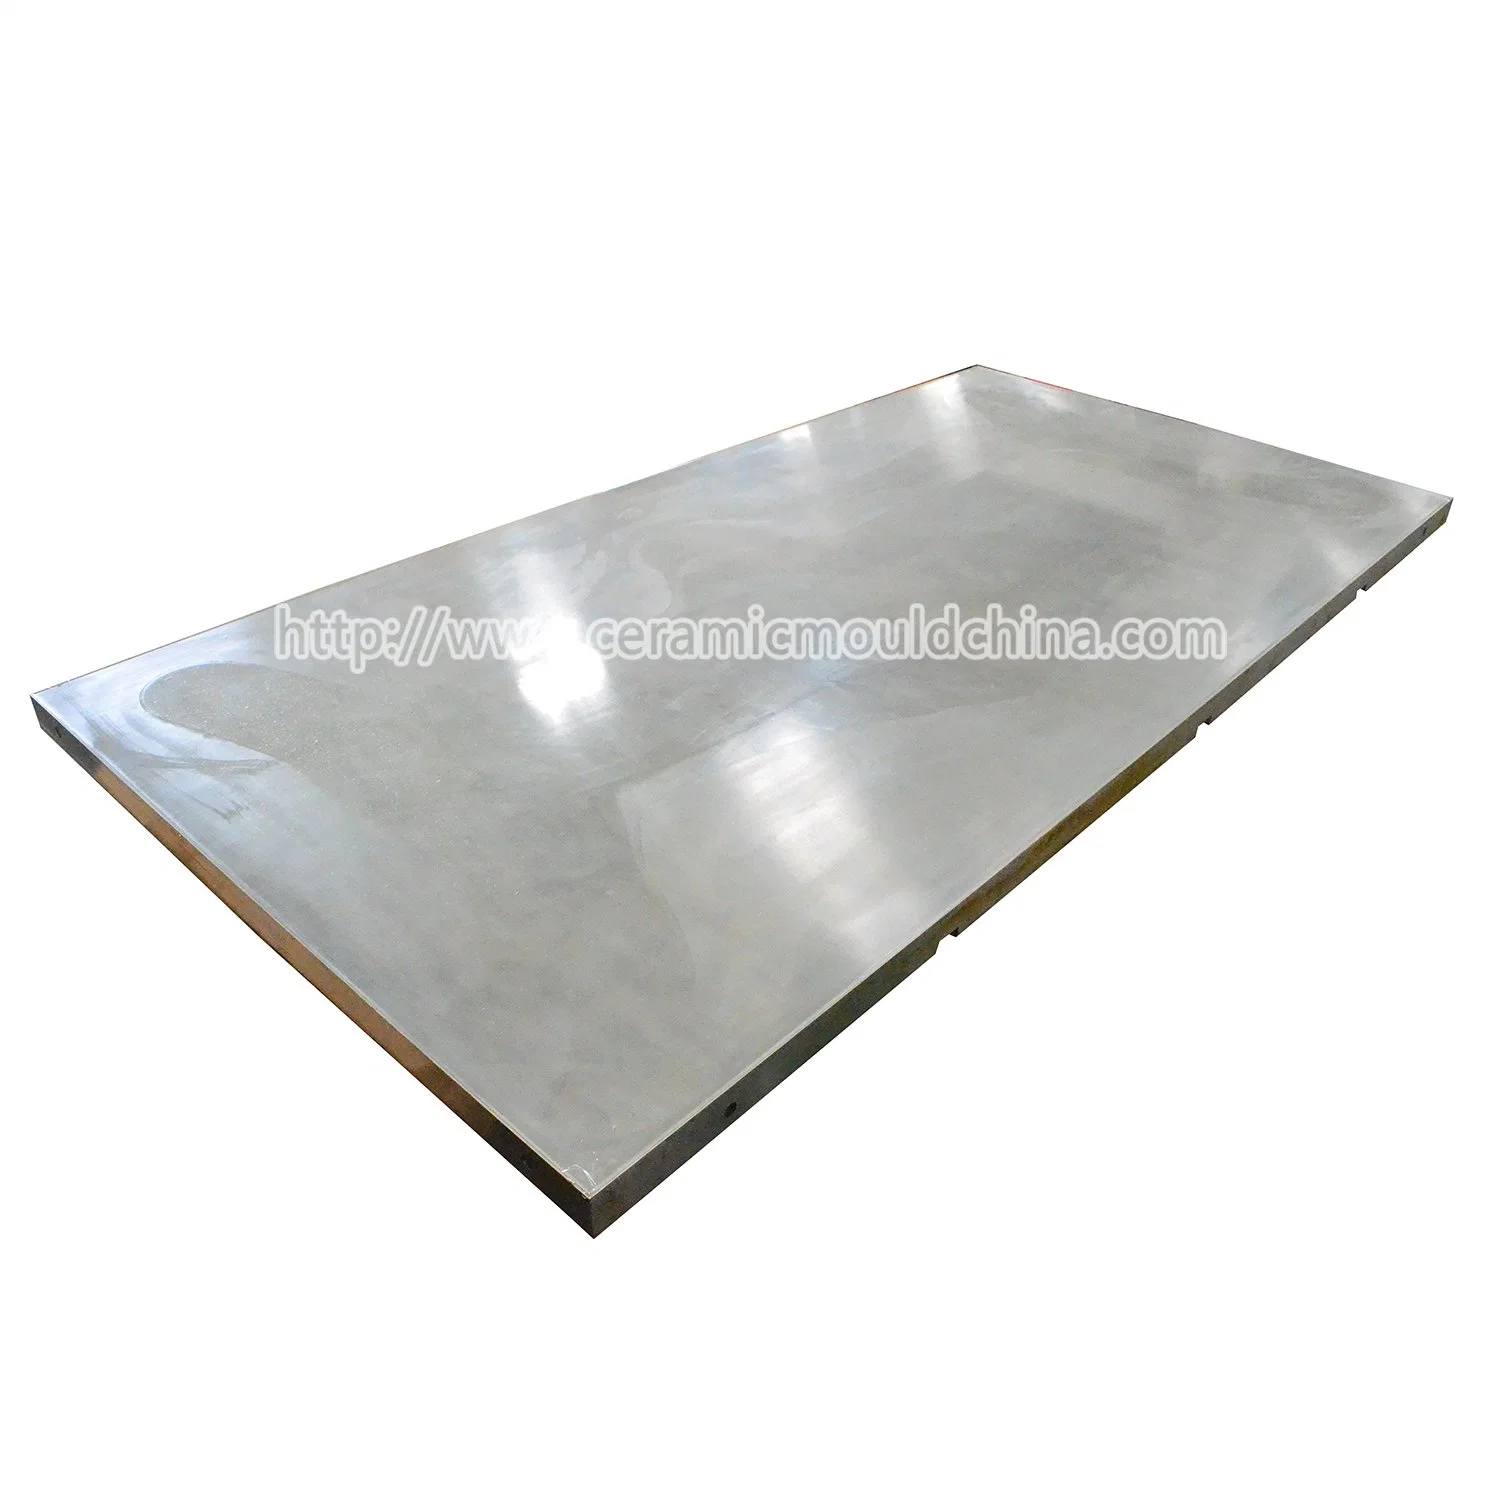 Китай полированного стекла керамические плитки Sacmi пресс-формы нажмите клавишу